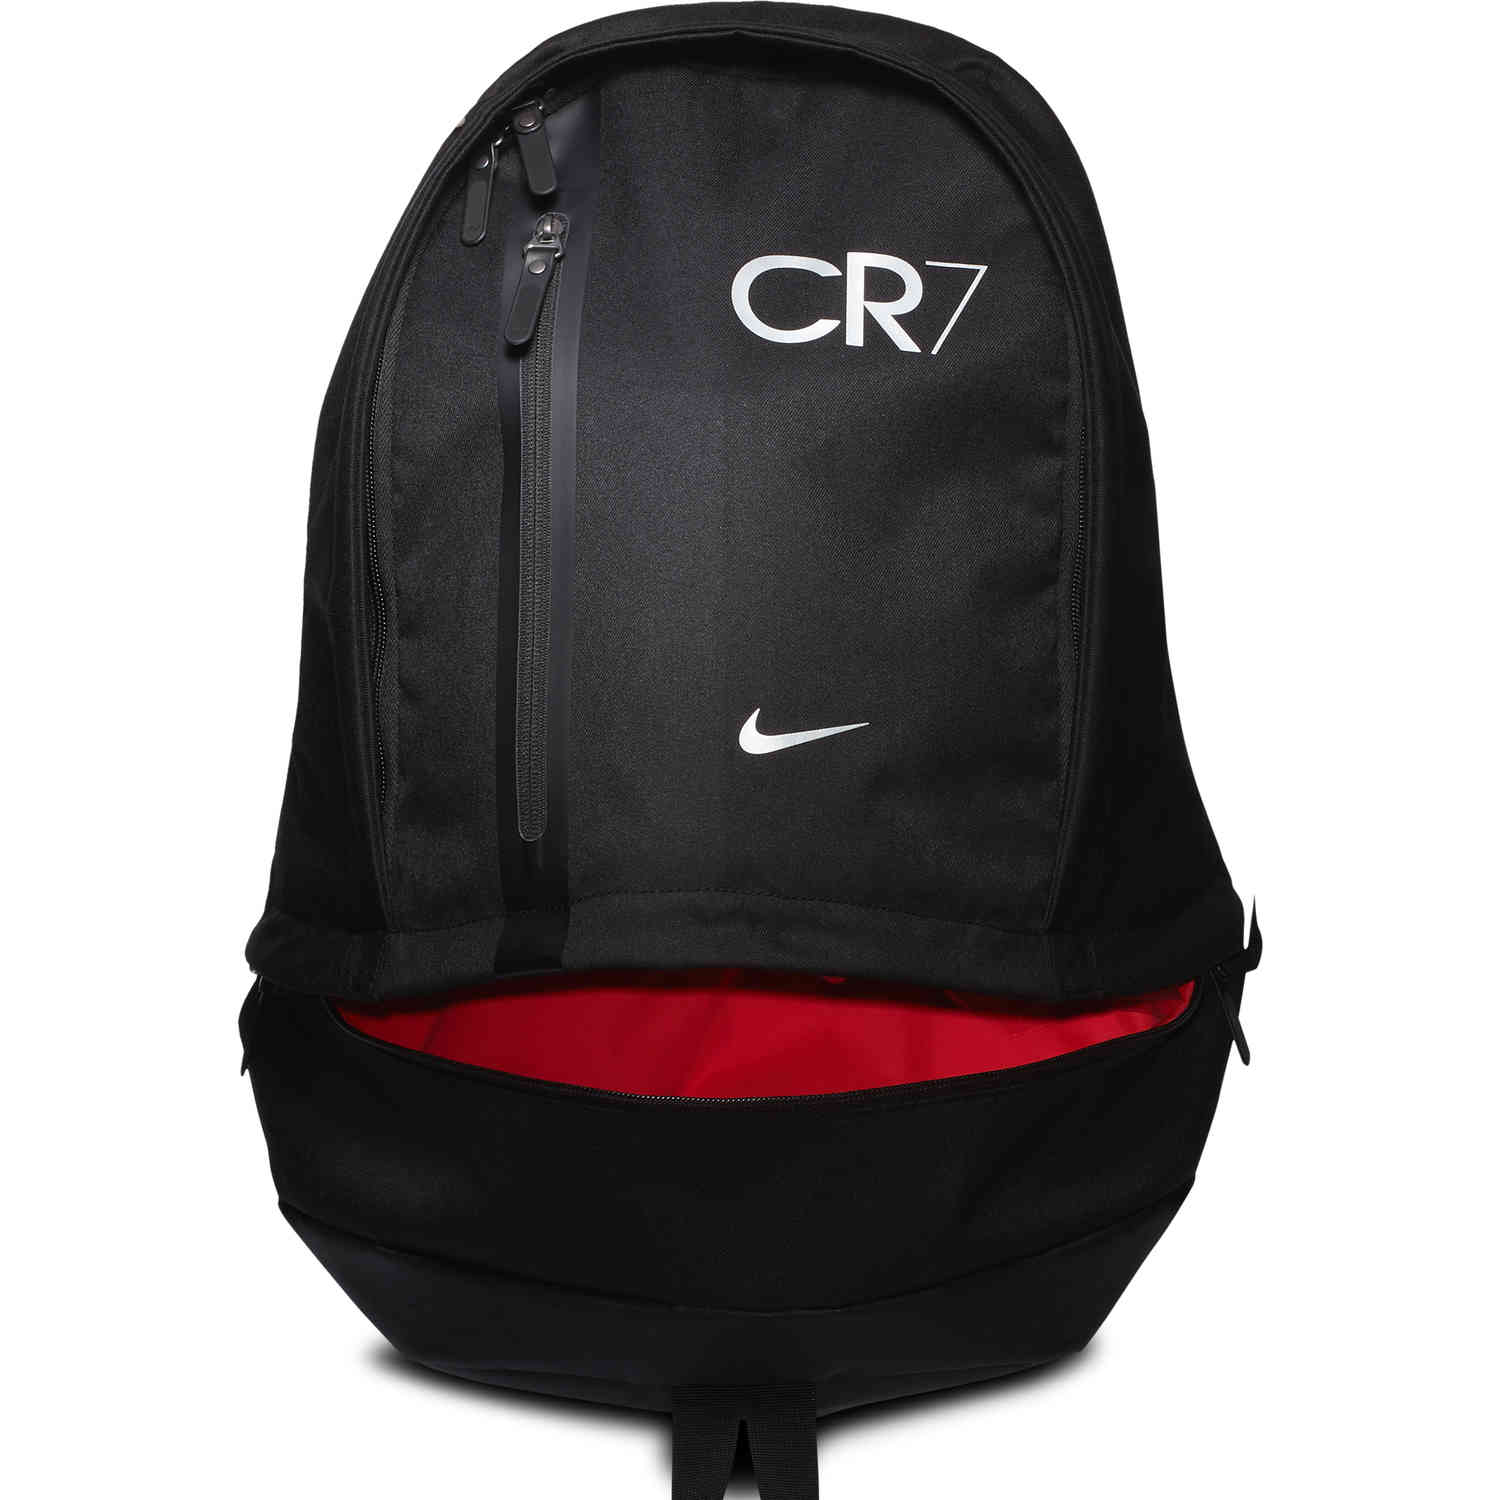 nike cr7 cheyenne backpack